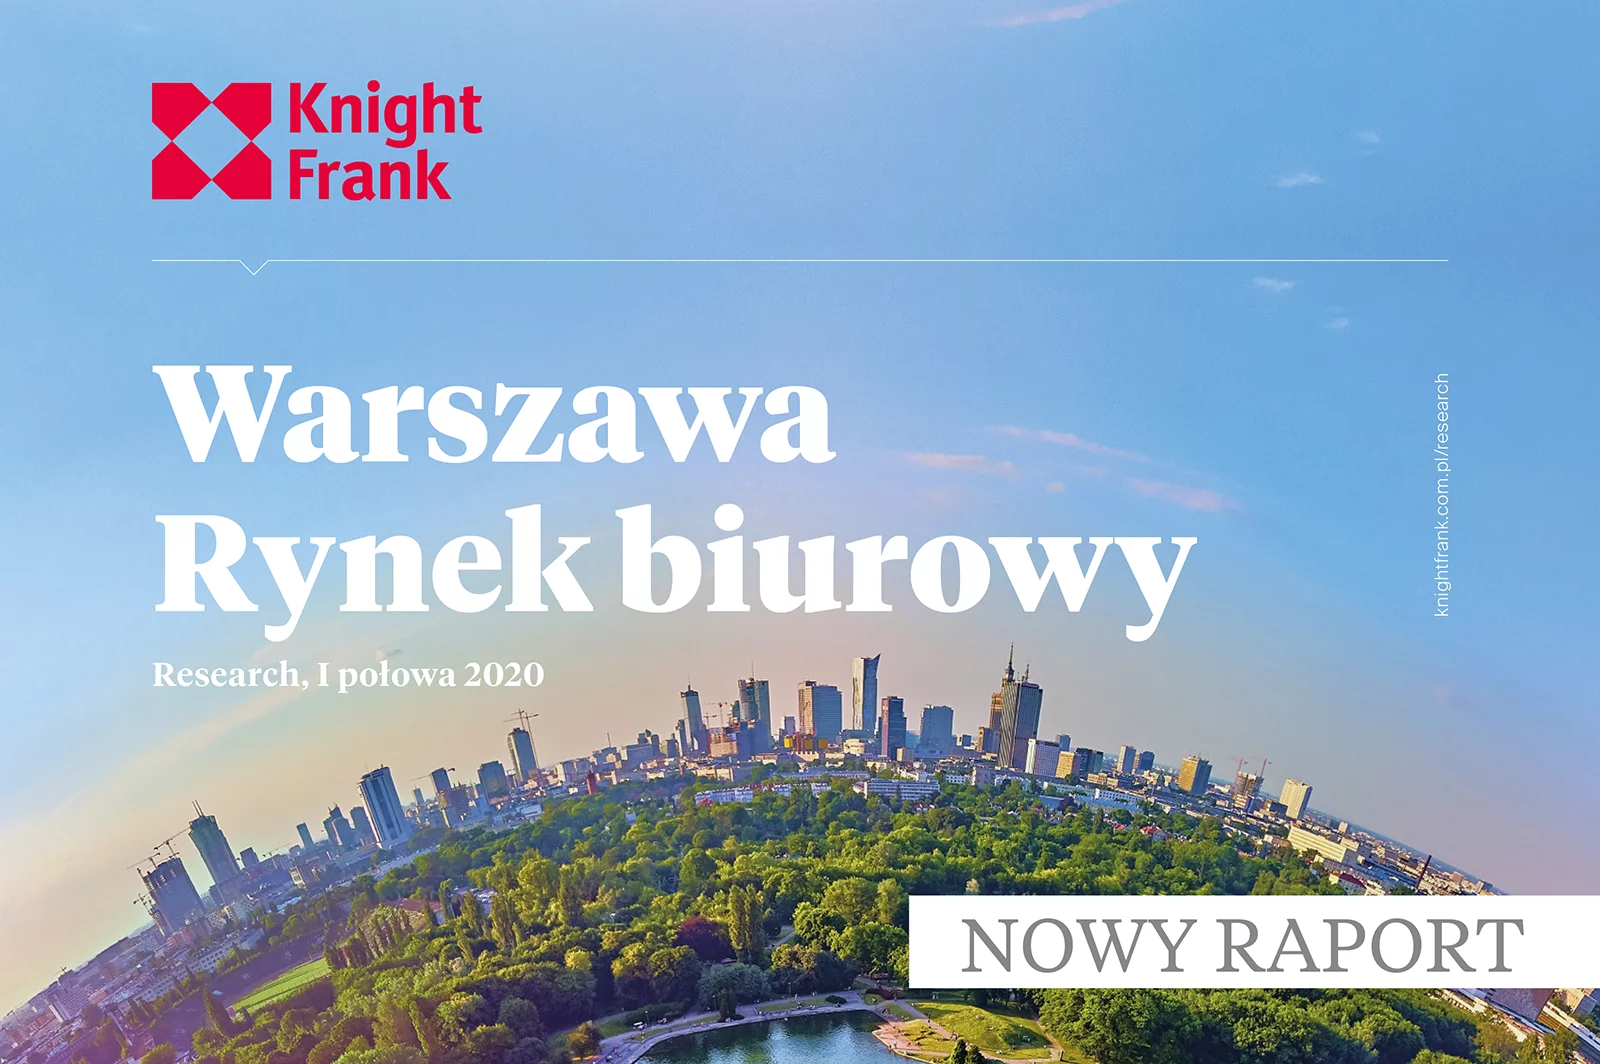 Knight Frank rzuca nowe światło na wyniki branży w I połowie 2020 roku w Warszawie